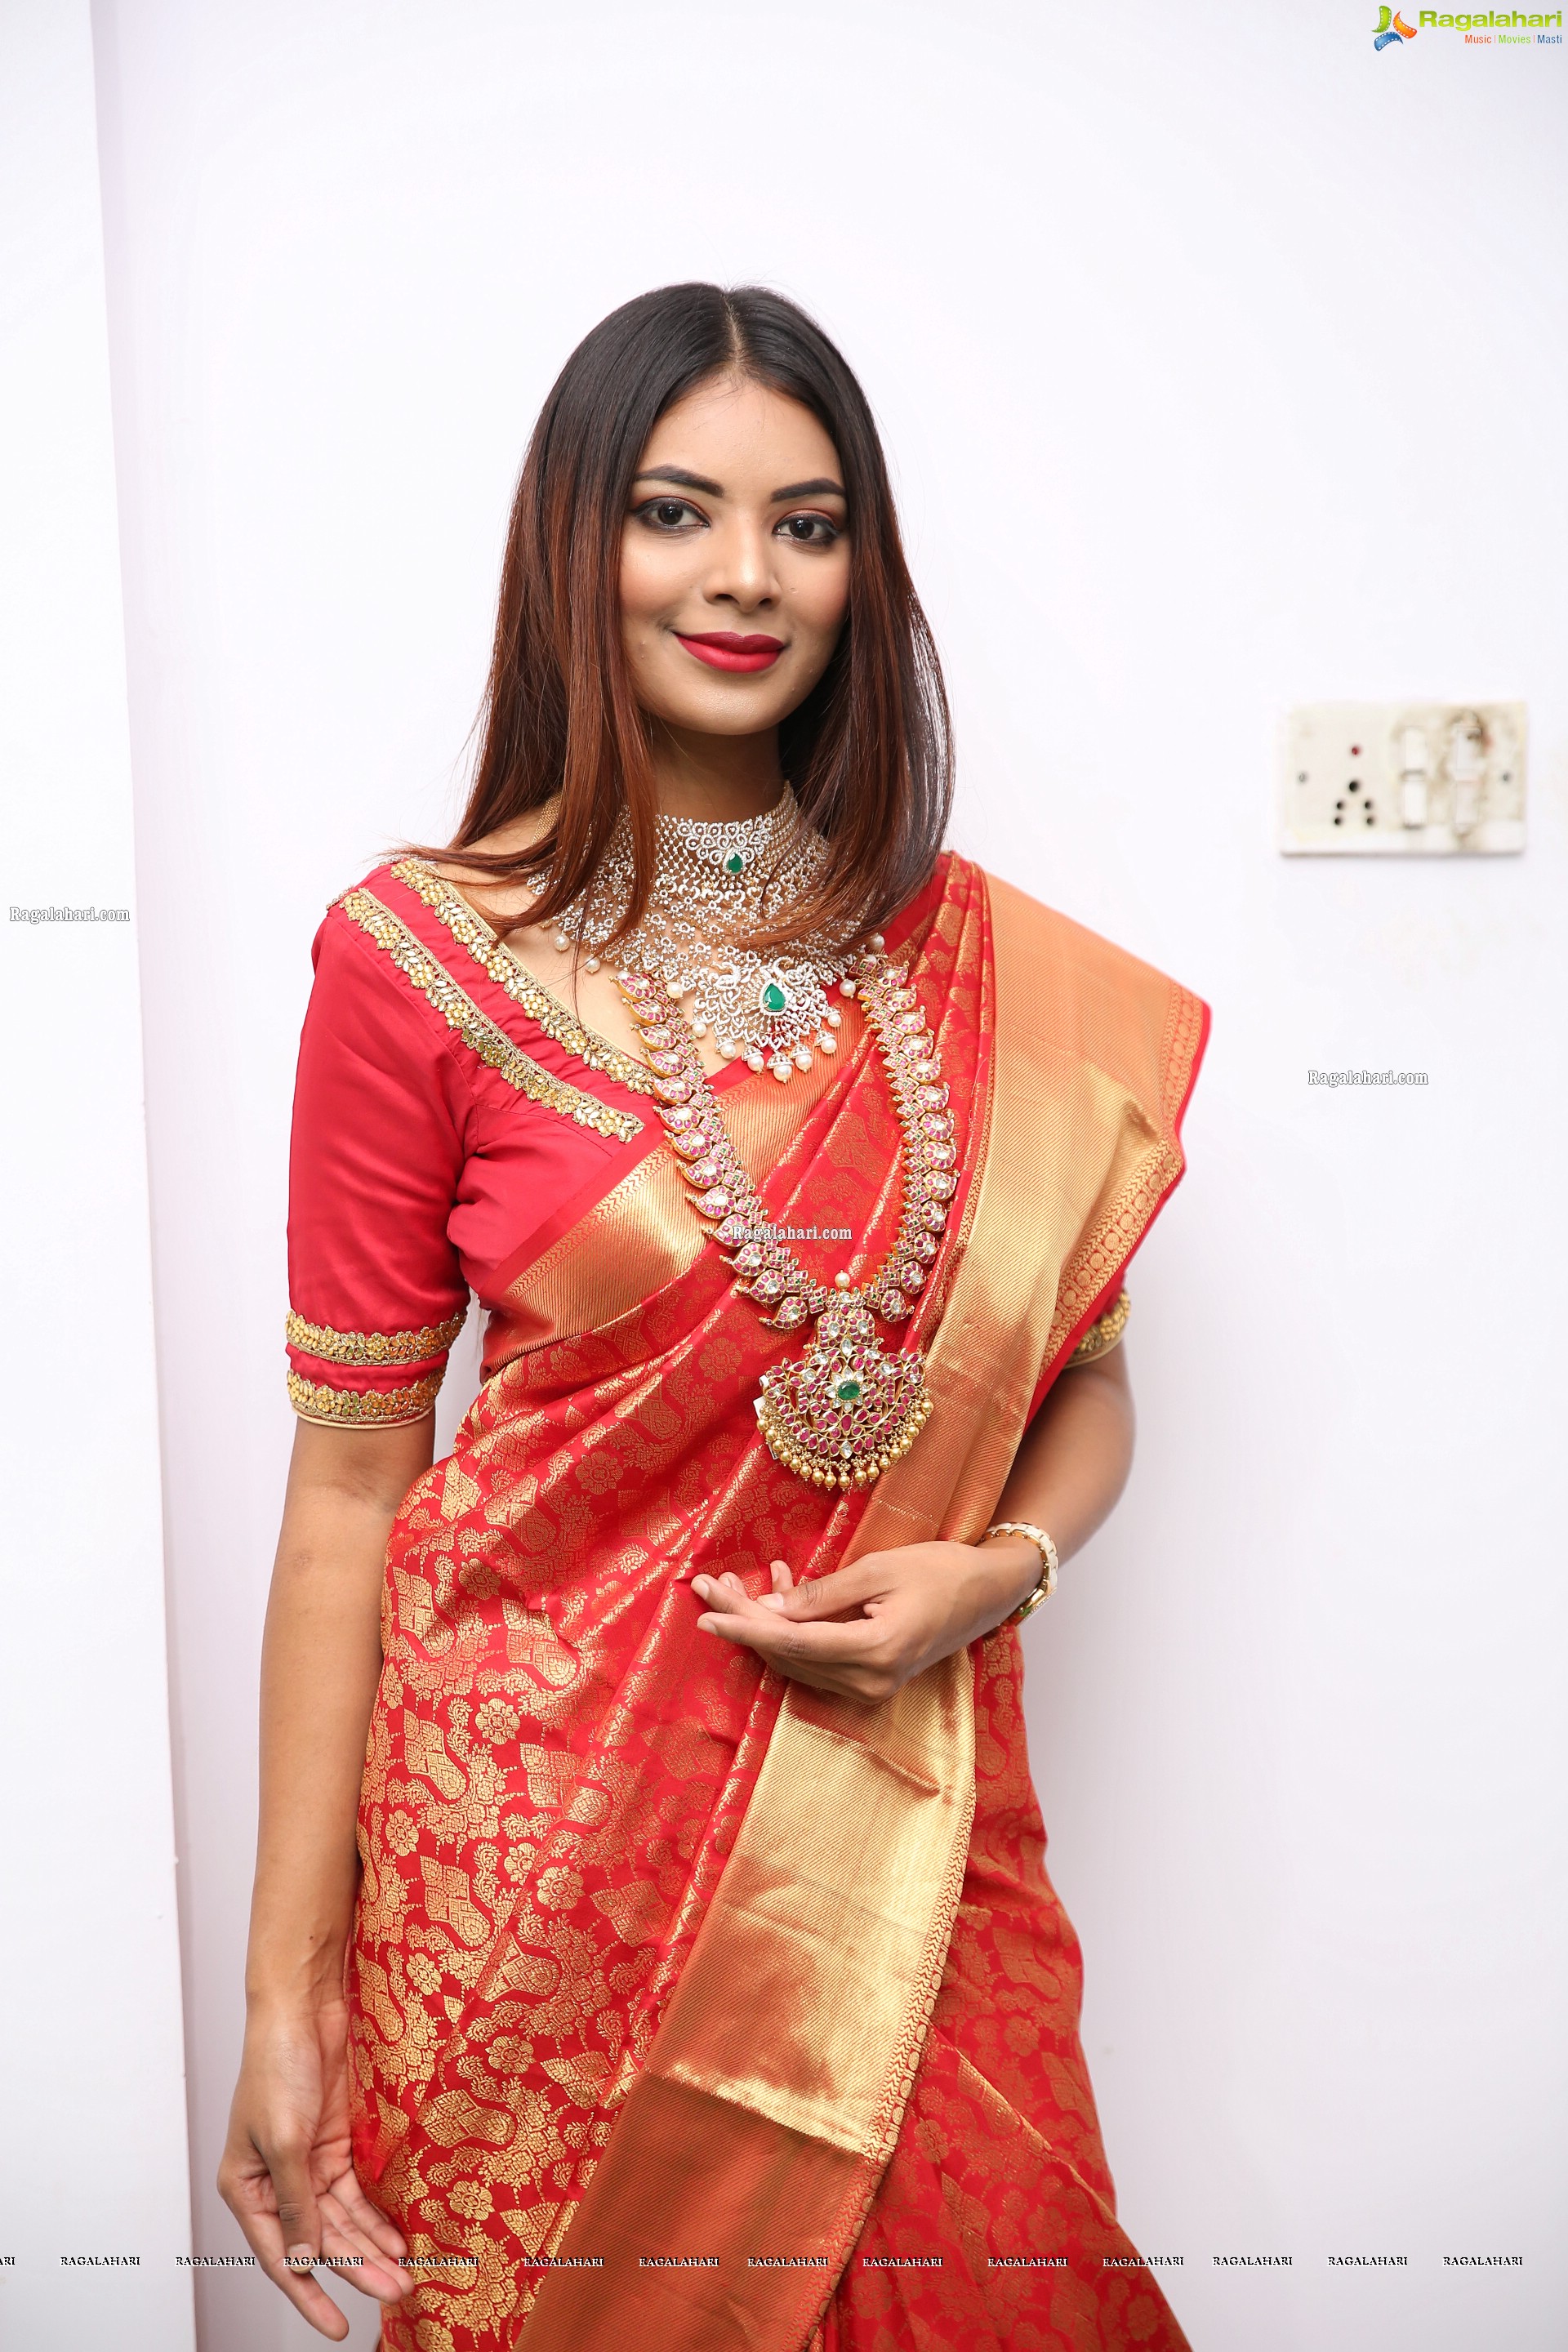 Neha Gupta at Kothari Diamond & Gold Jewellery Exhibition & Sale Curtain Raiser